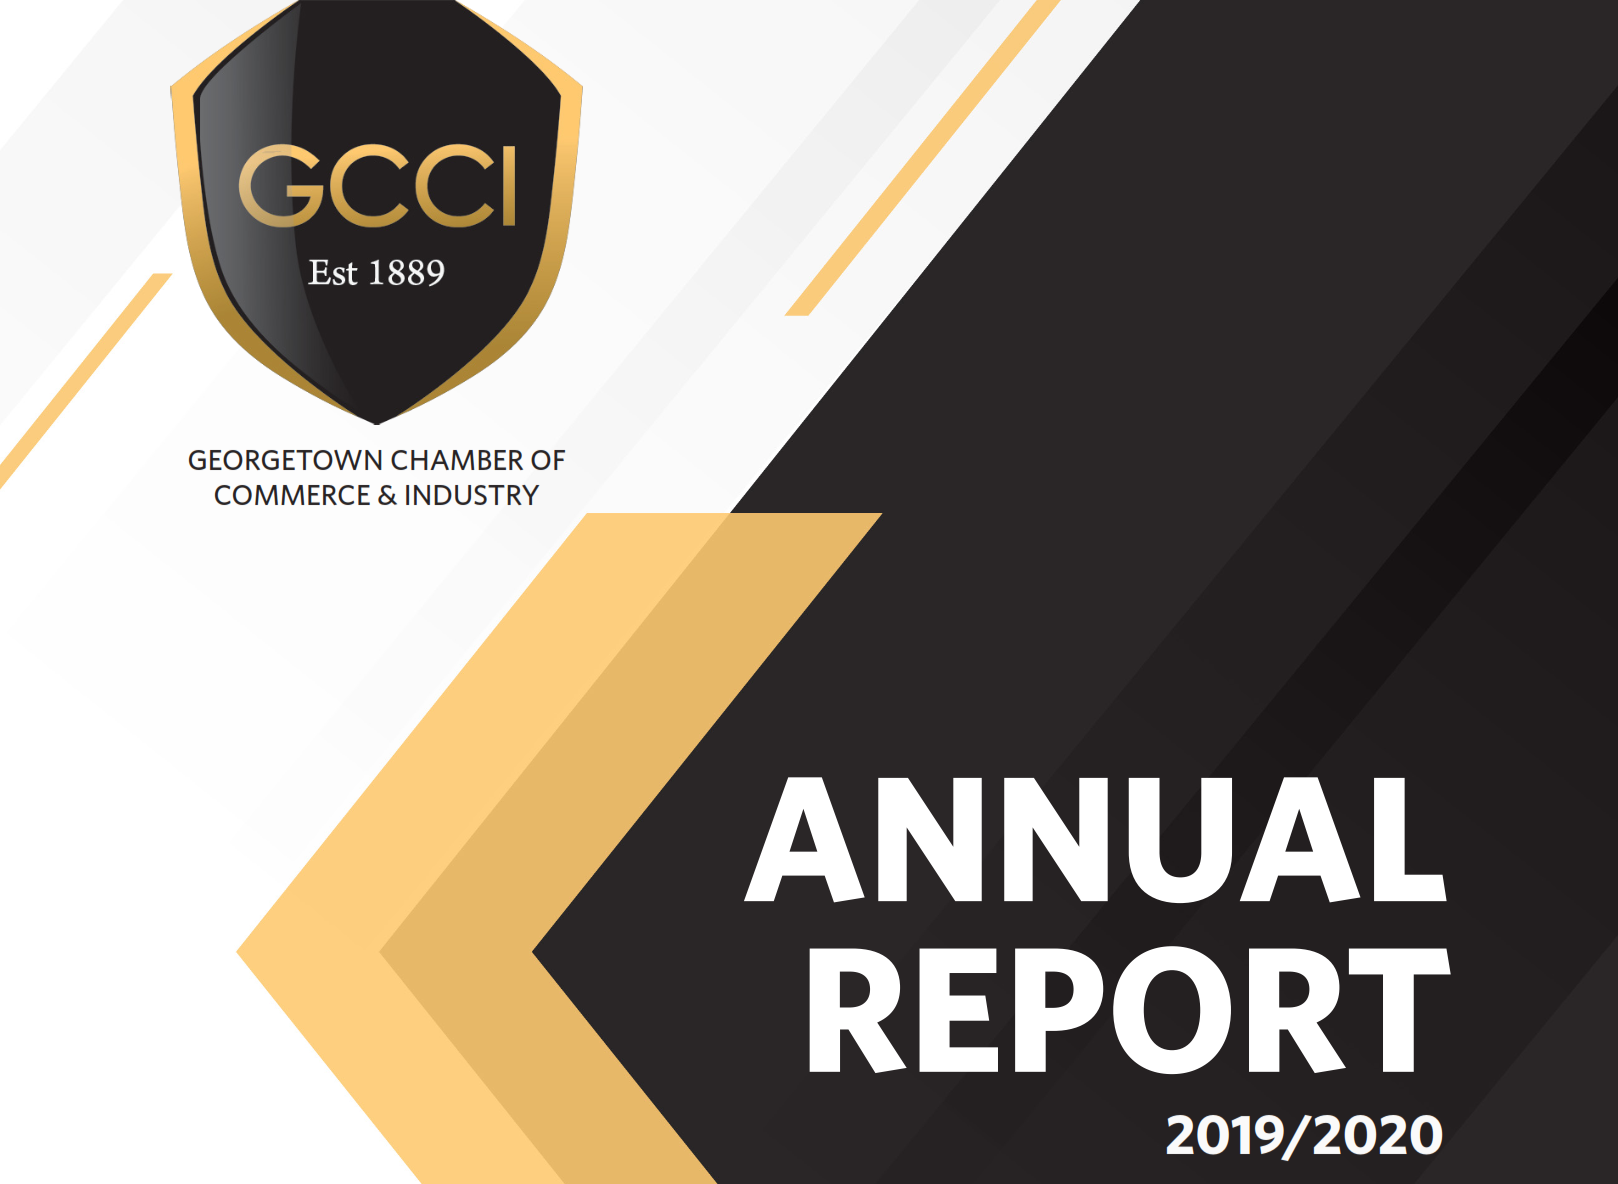 GCCI Annual Report 2019/2020